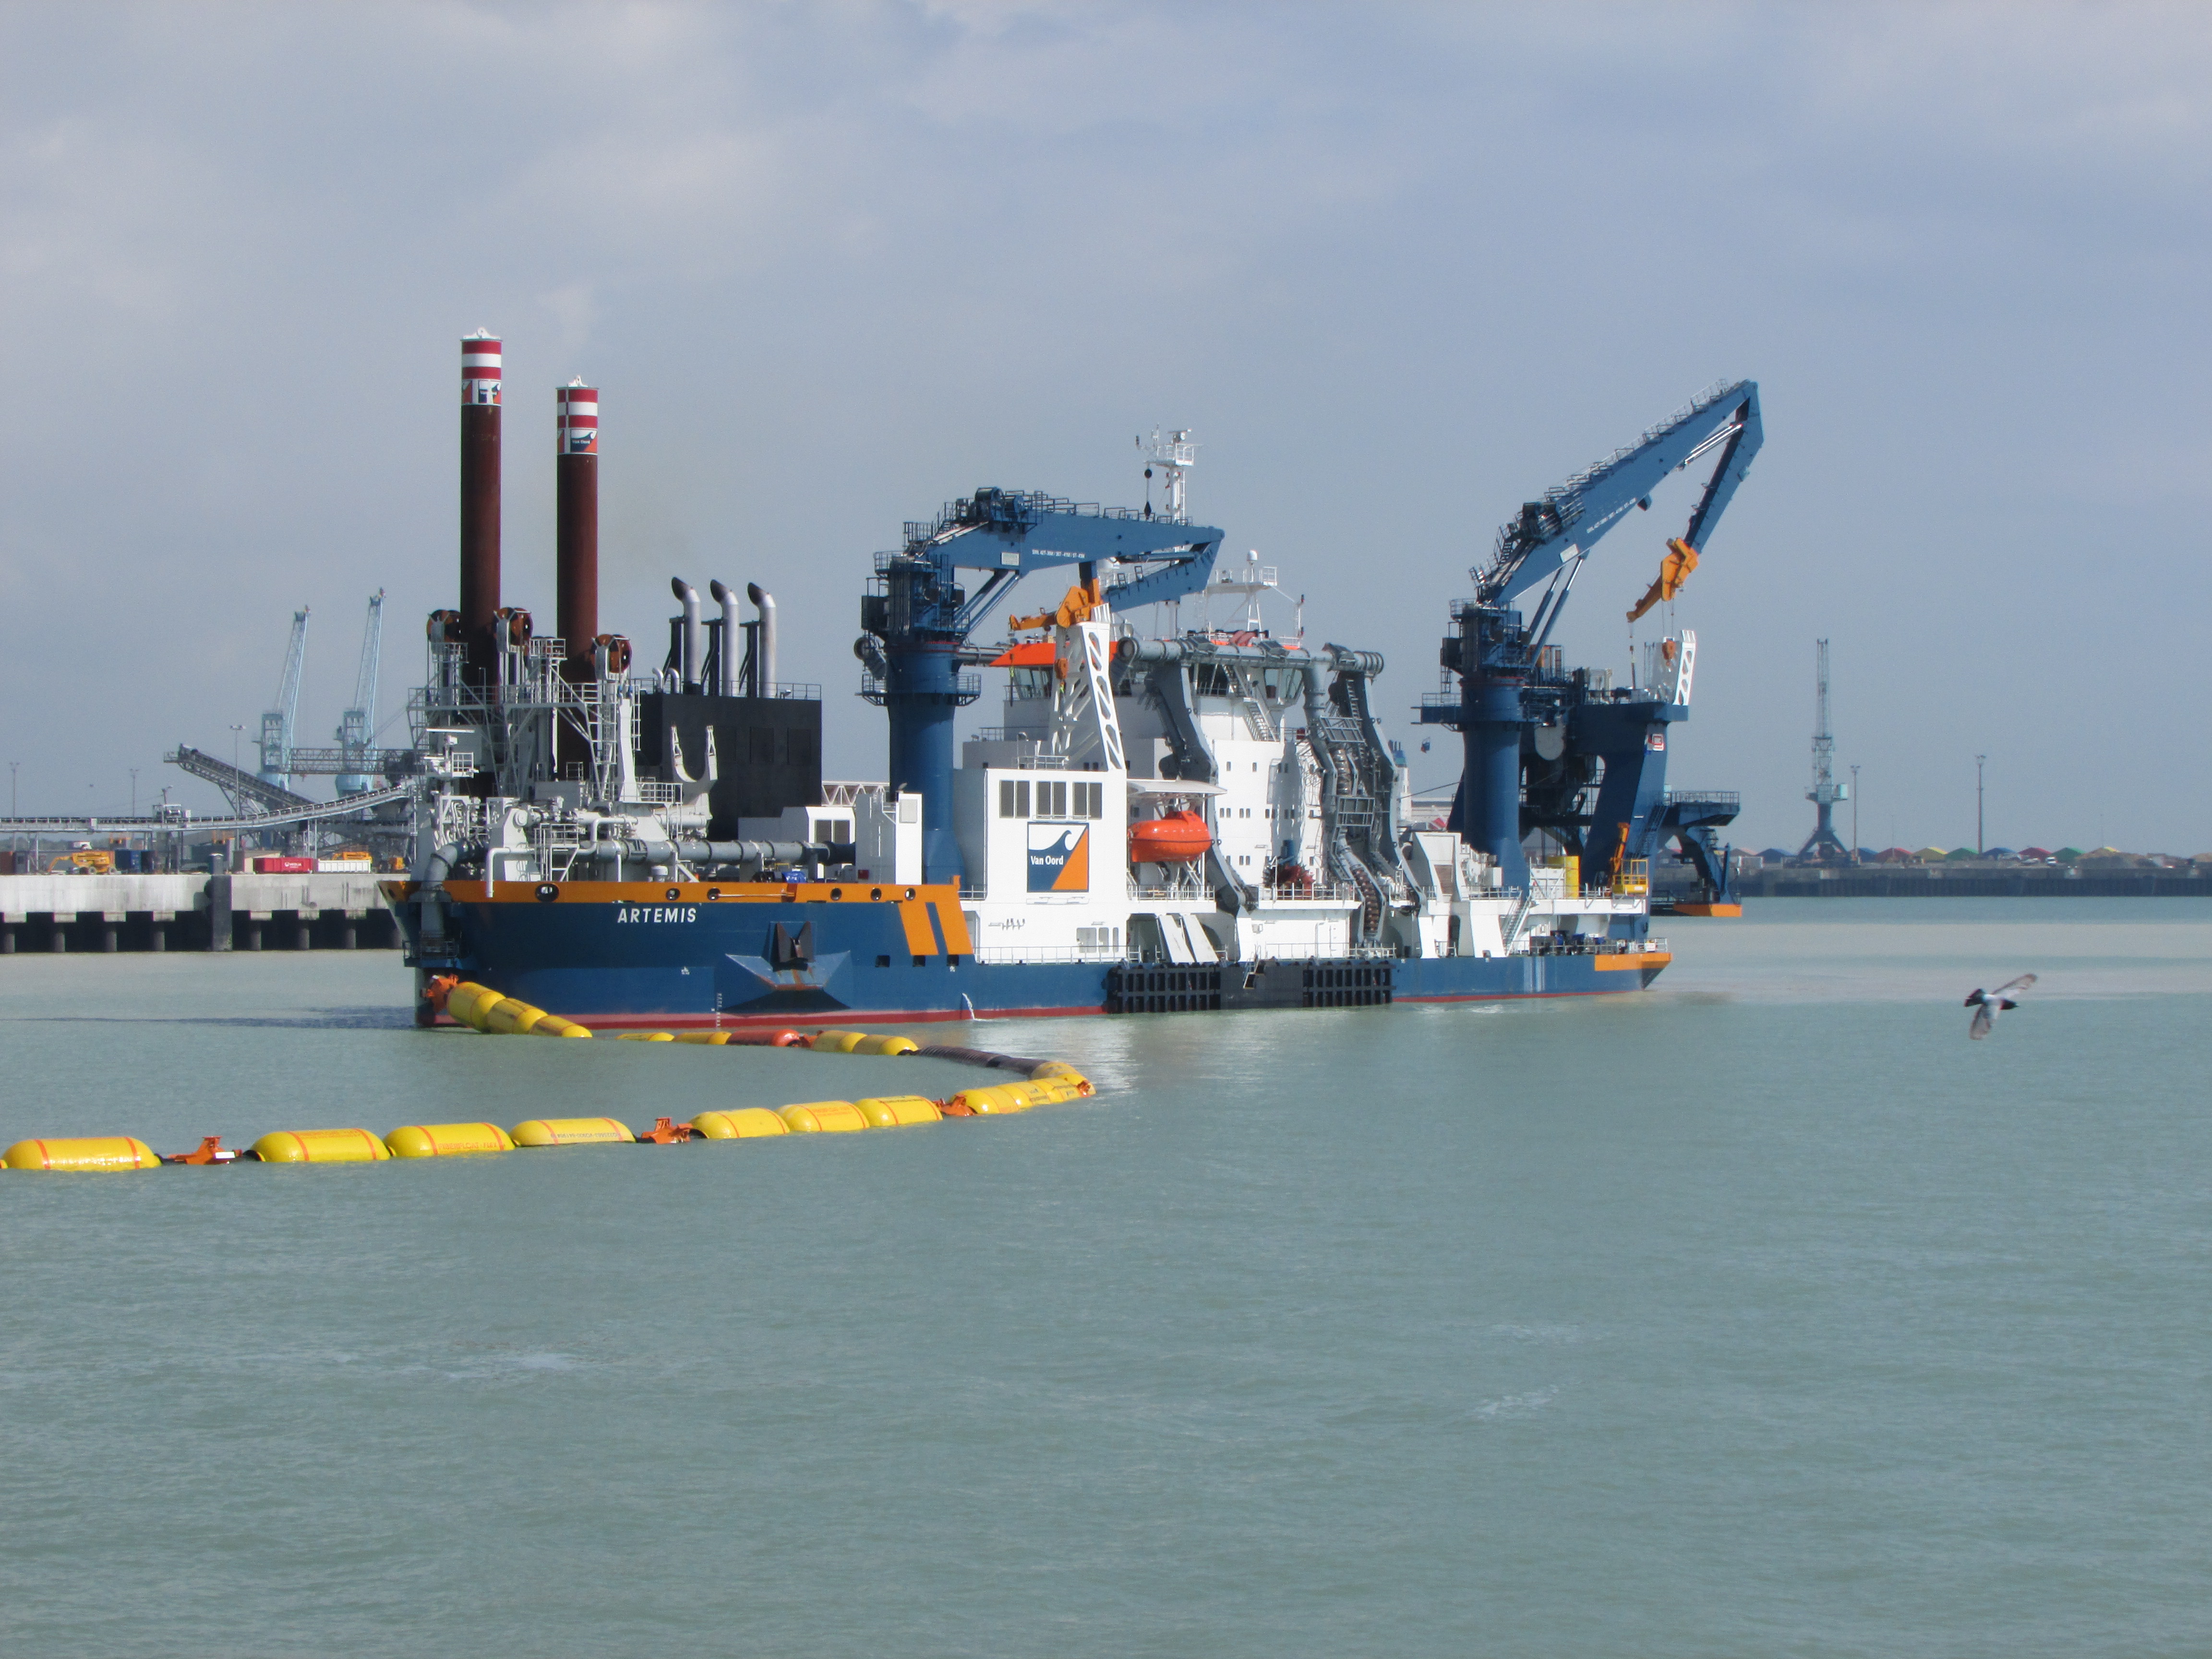 CSD Artemis at work in Port Atlantique